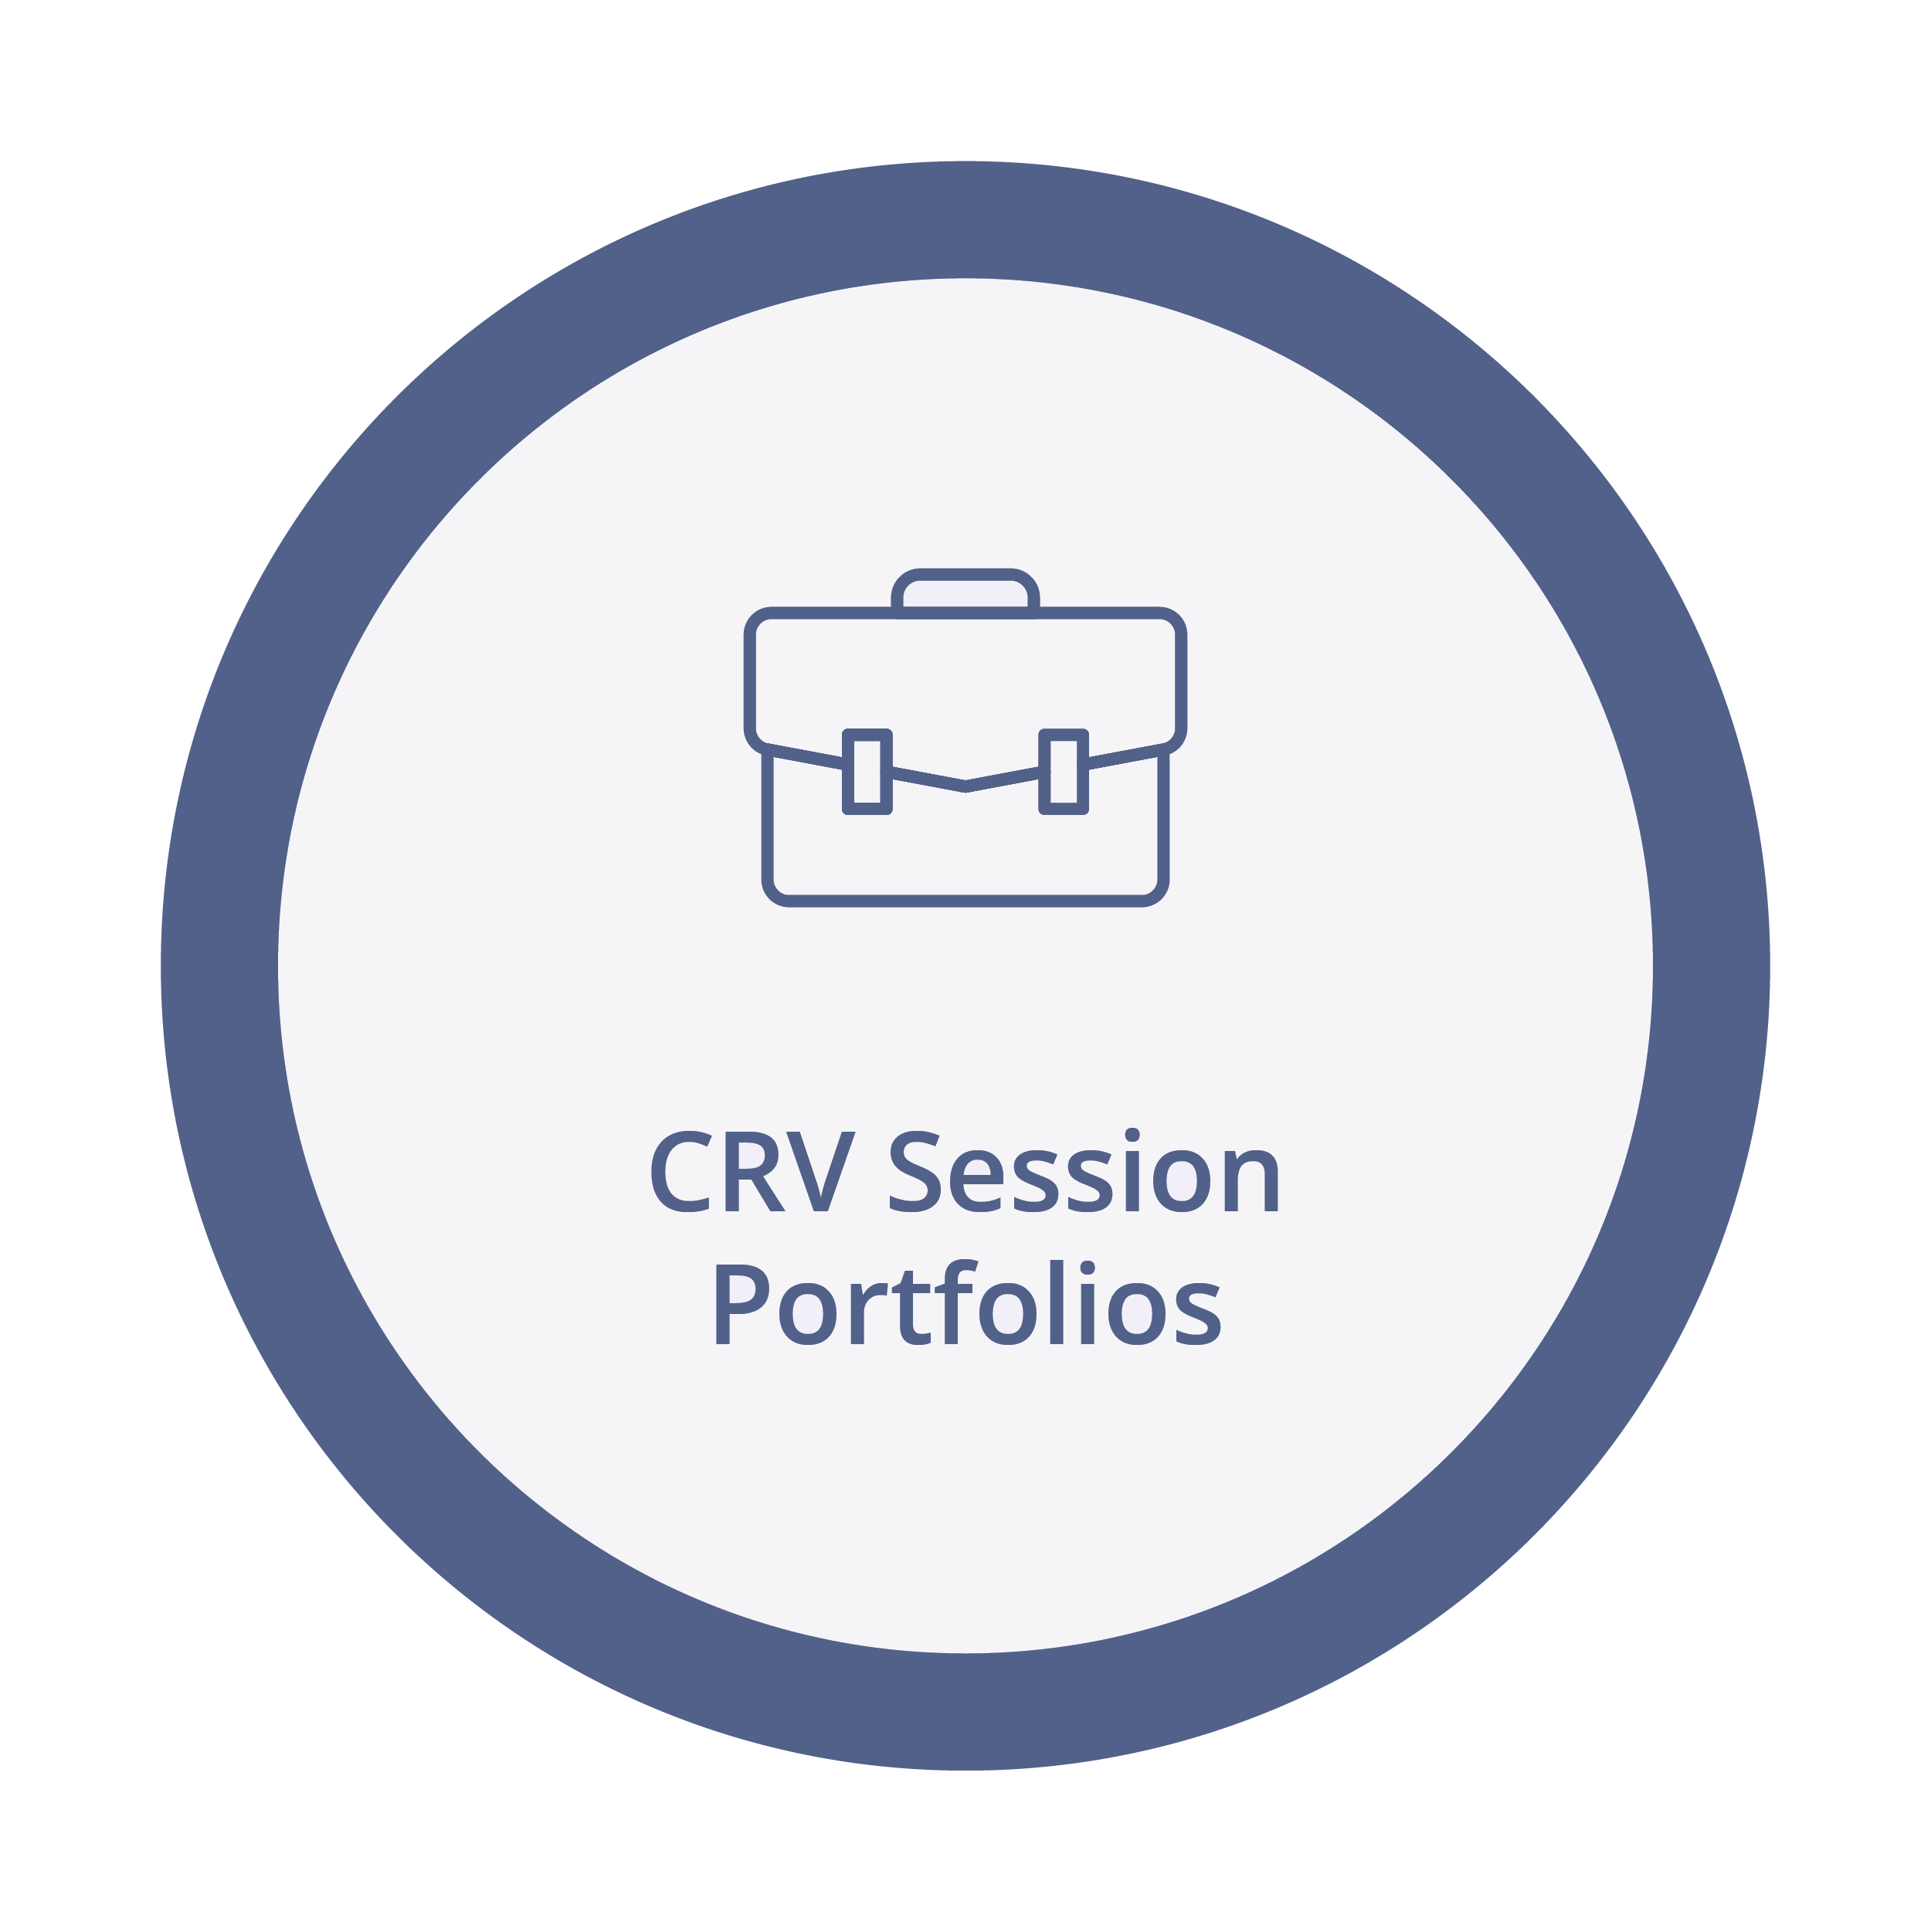 View CRV Session Portfolios